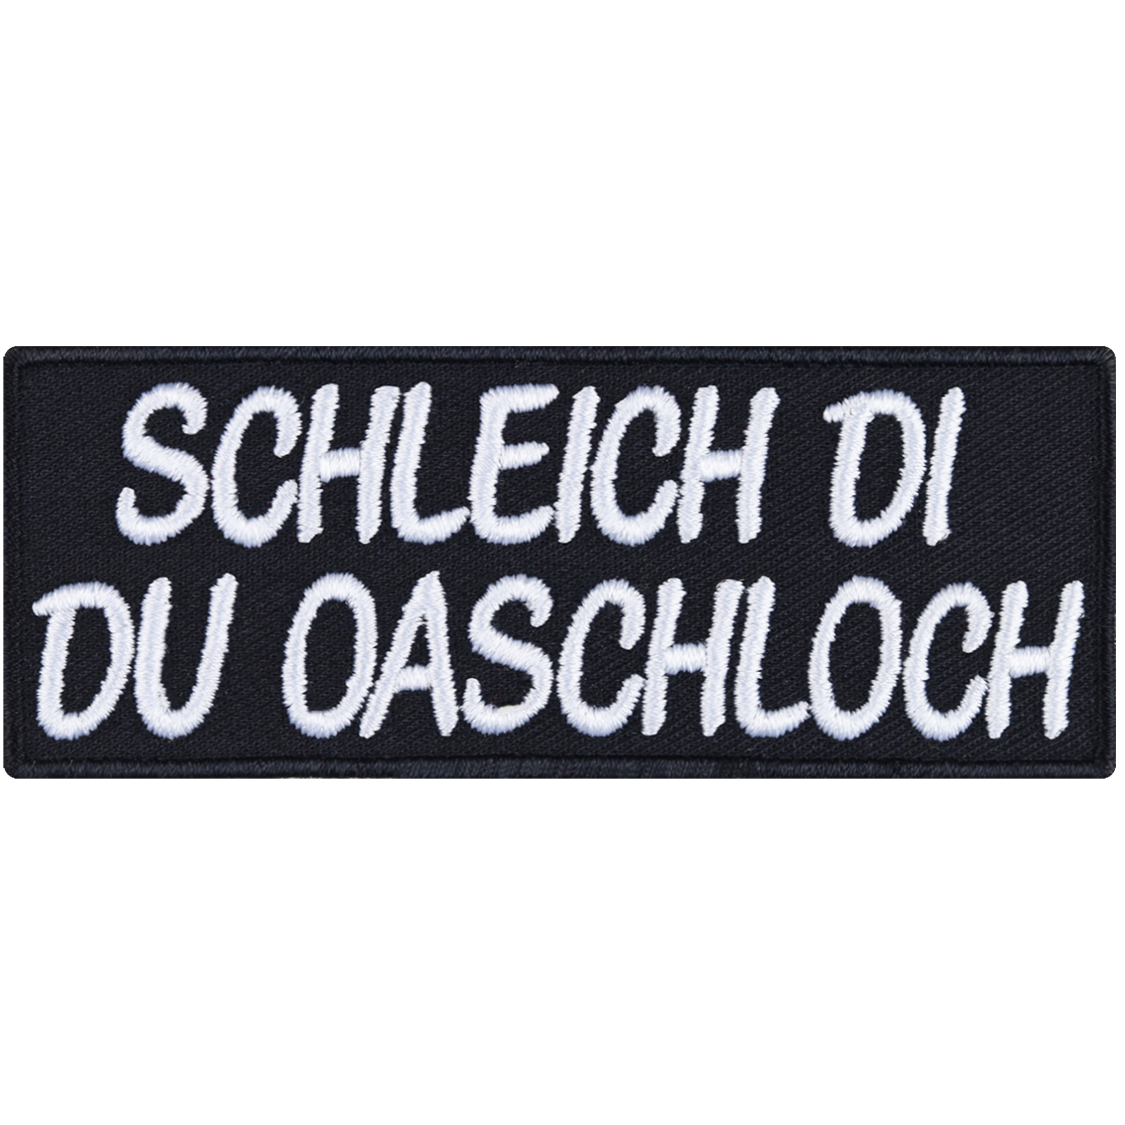 Schleich di du Oaschloch - Patch